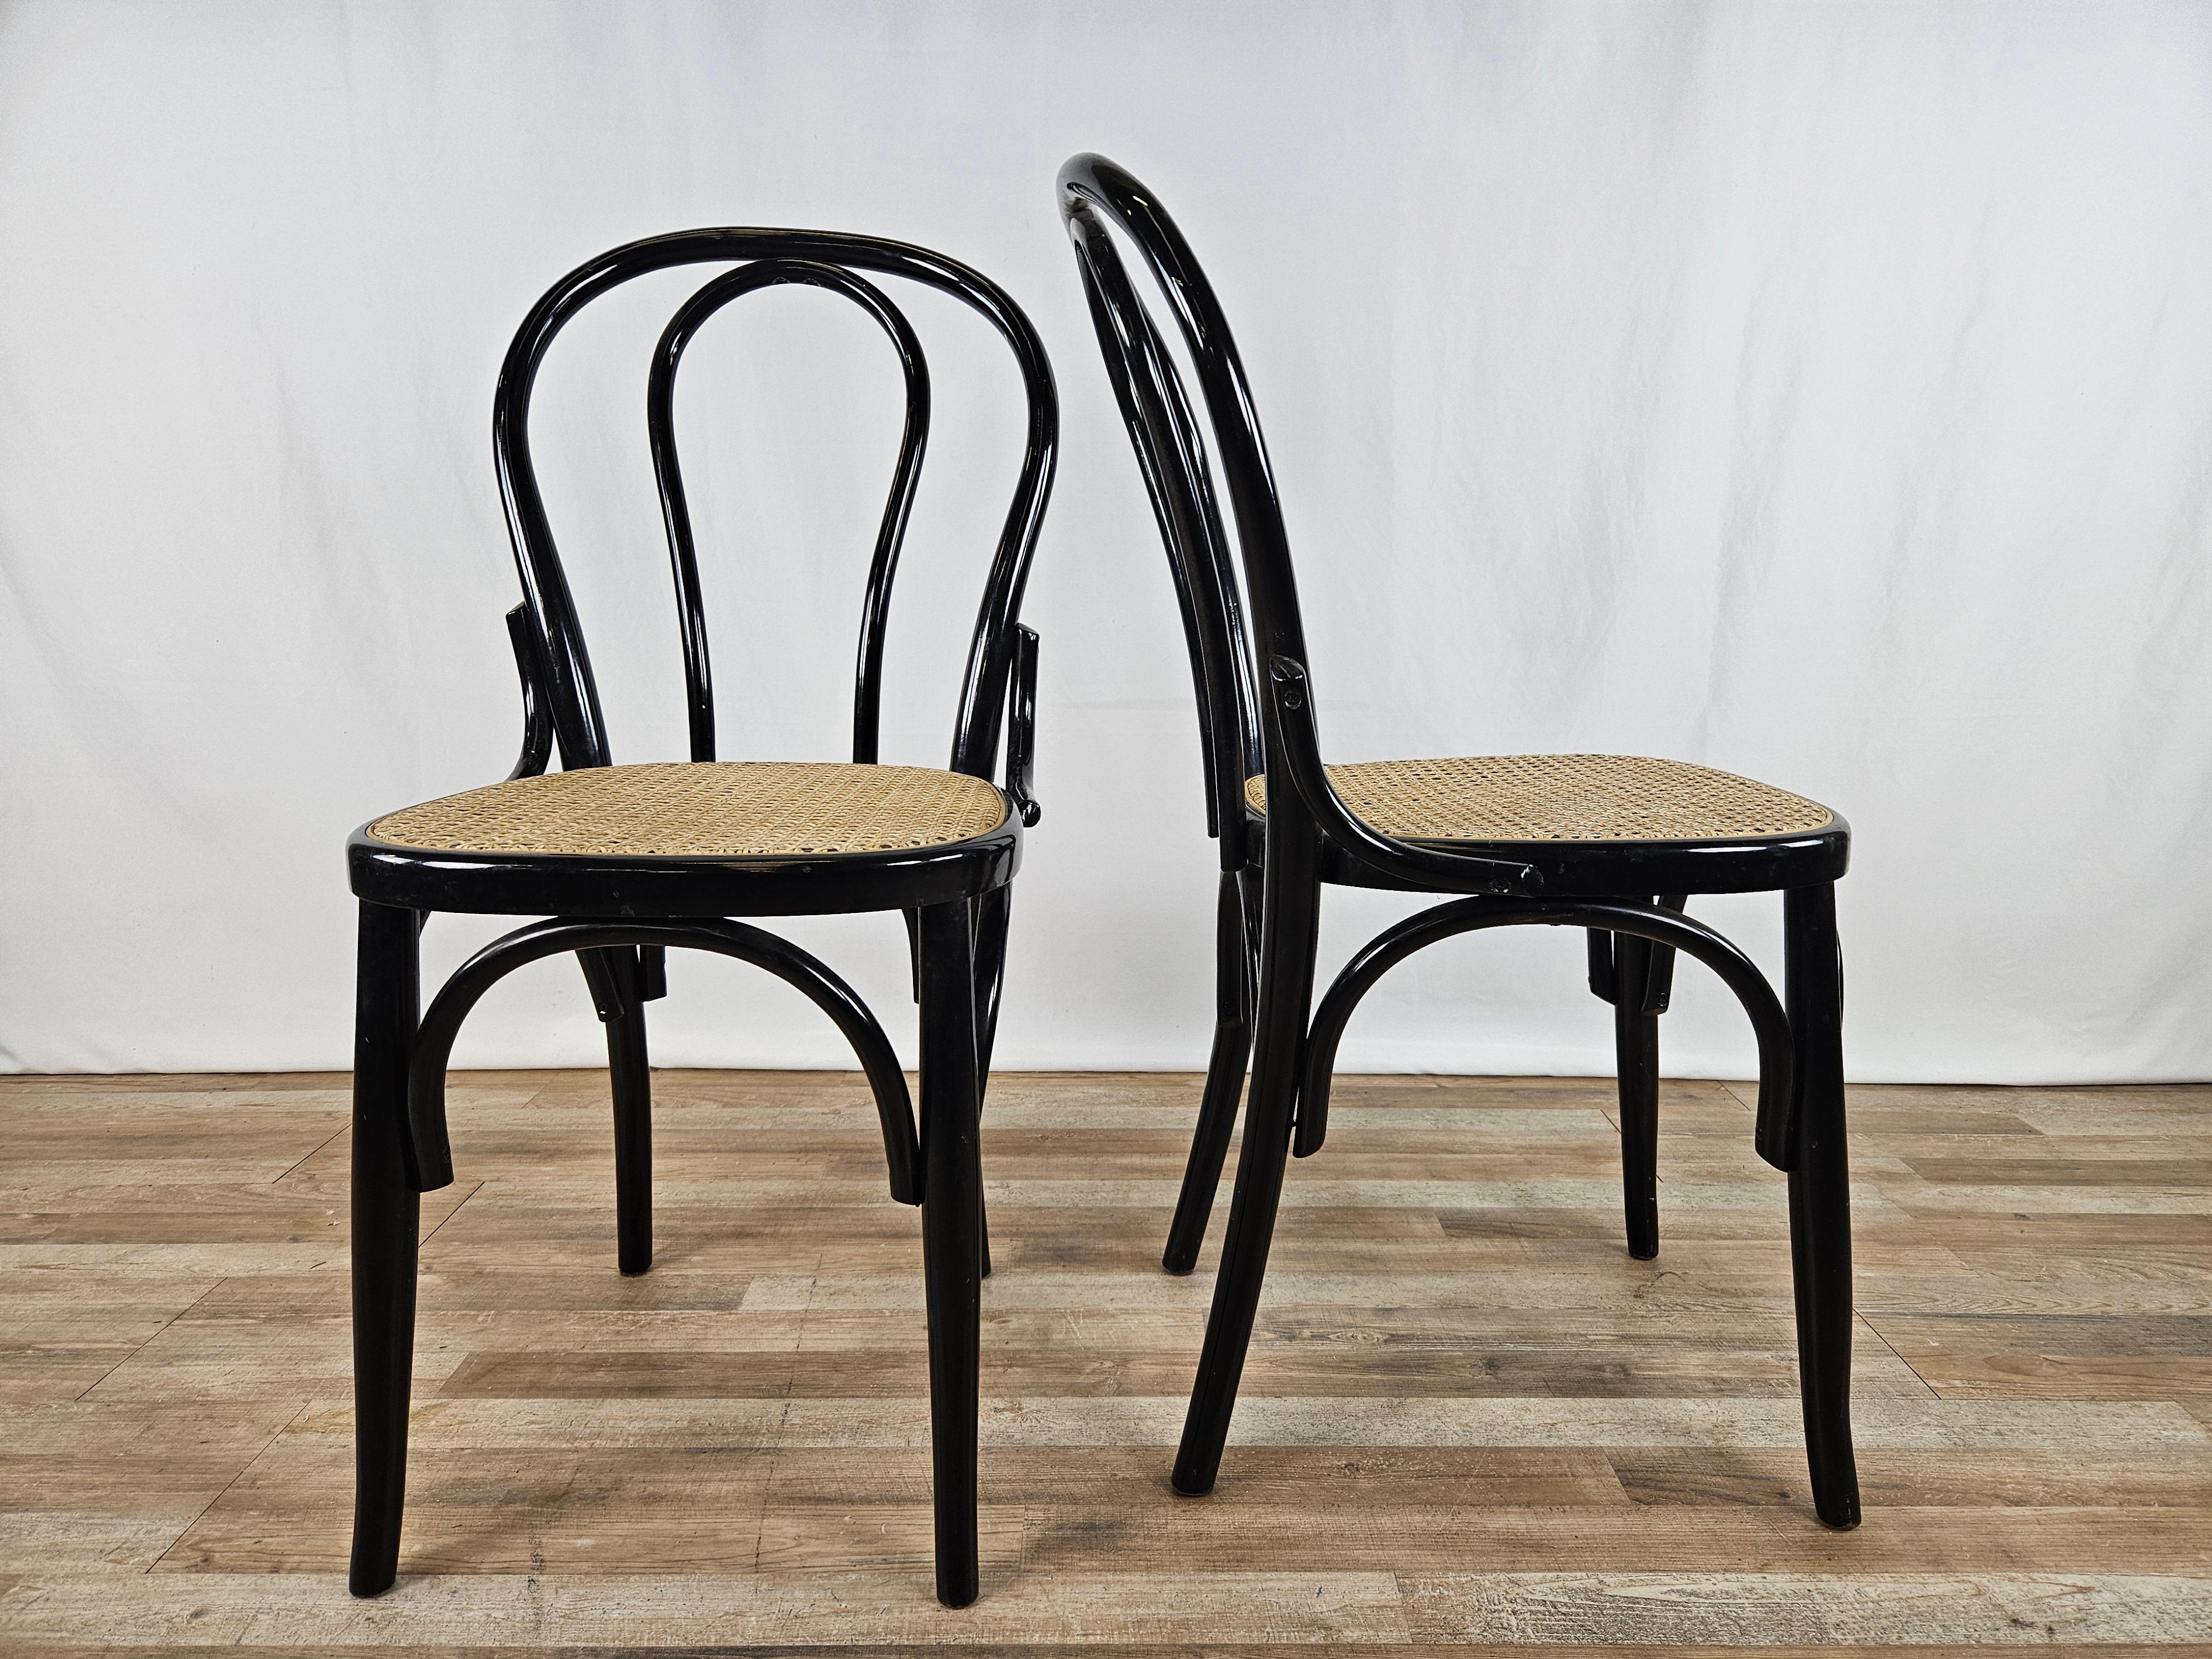 Ein Paar schwarz lackierte Holzstühle mit Wiener Strohsitz und dekorativer Schleife zwischen Rückenlehne und Sitz.

Ideal für Küchen, Büros, Wohnräume oder als Möbelelemente.

Normale alters- und gebrauchsbedingte Gebrauchsspuren.